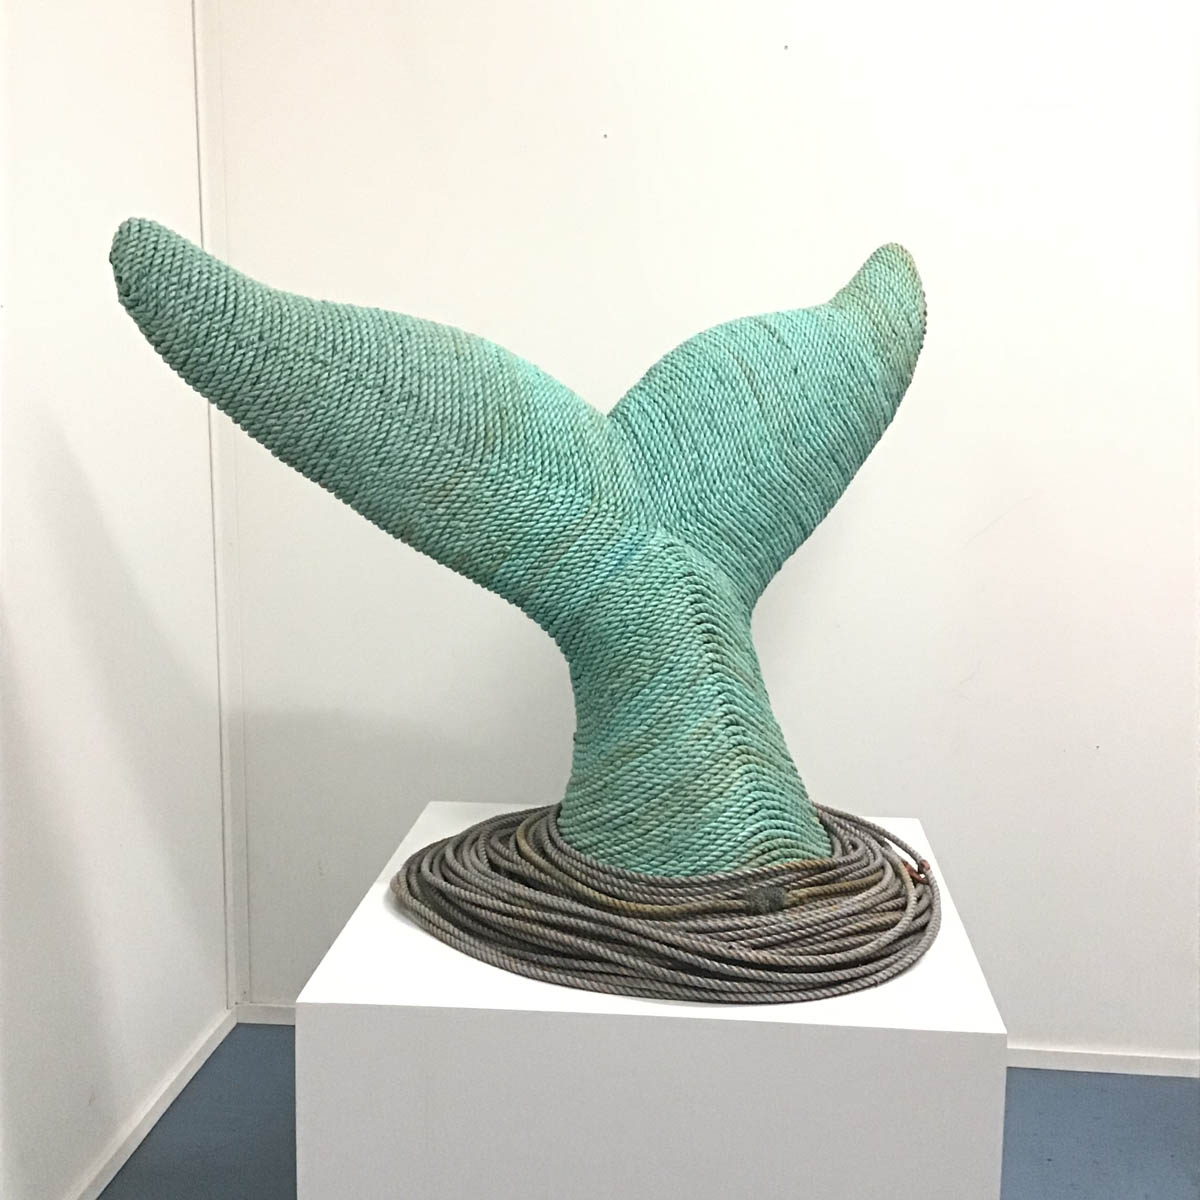 Ethan Estess Whale Tail Sculpture